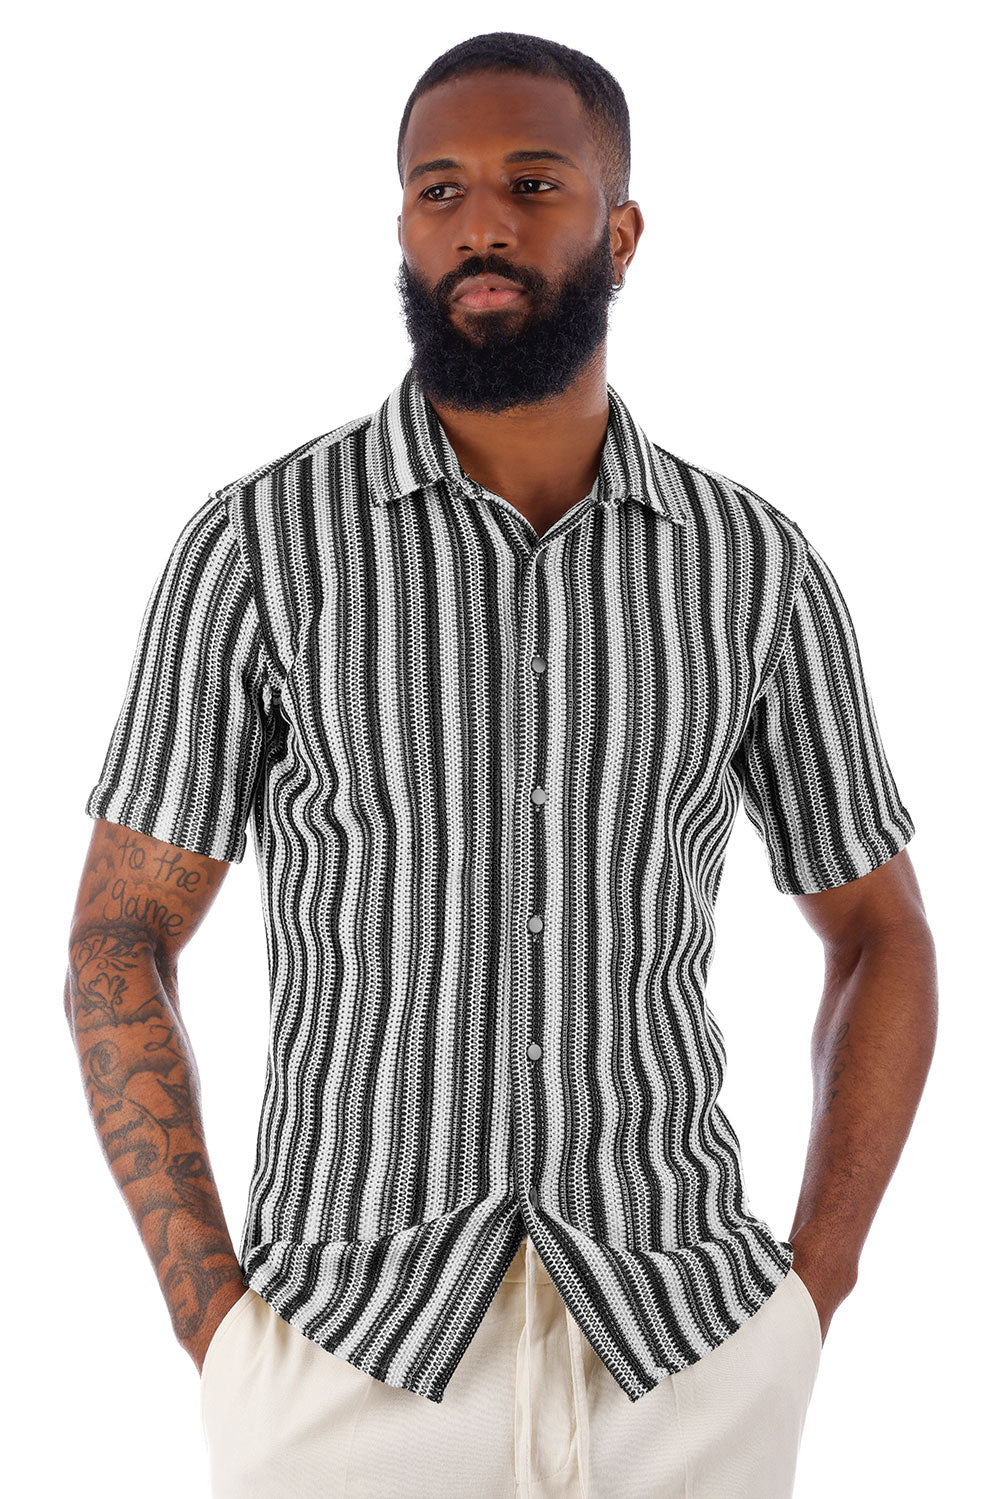 BARABAS Men's Knit Striped Crochet Knitted Short Sleeve Shirts 4SST01 White Black